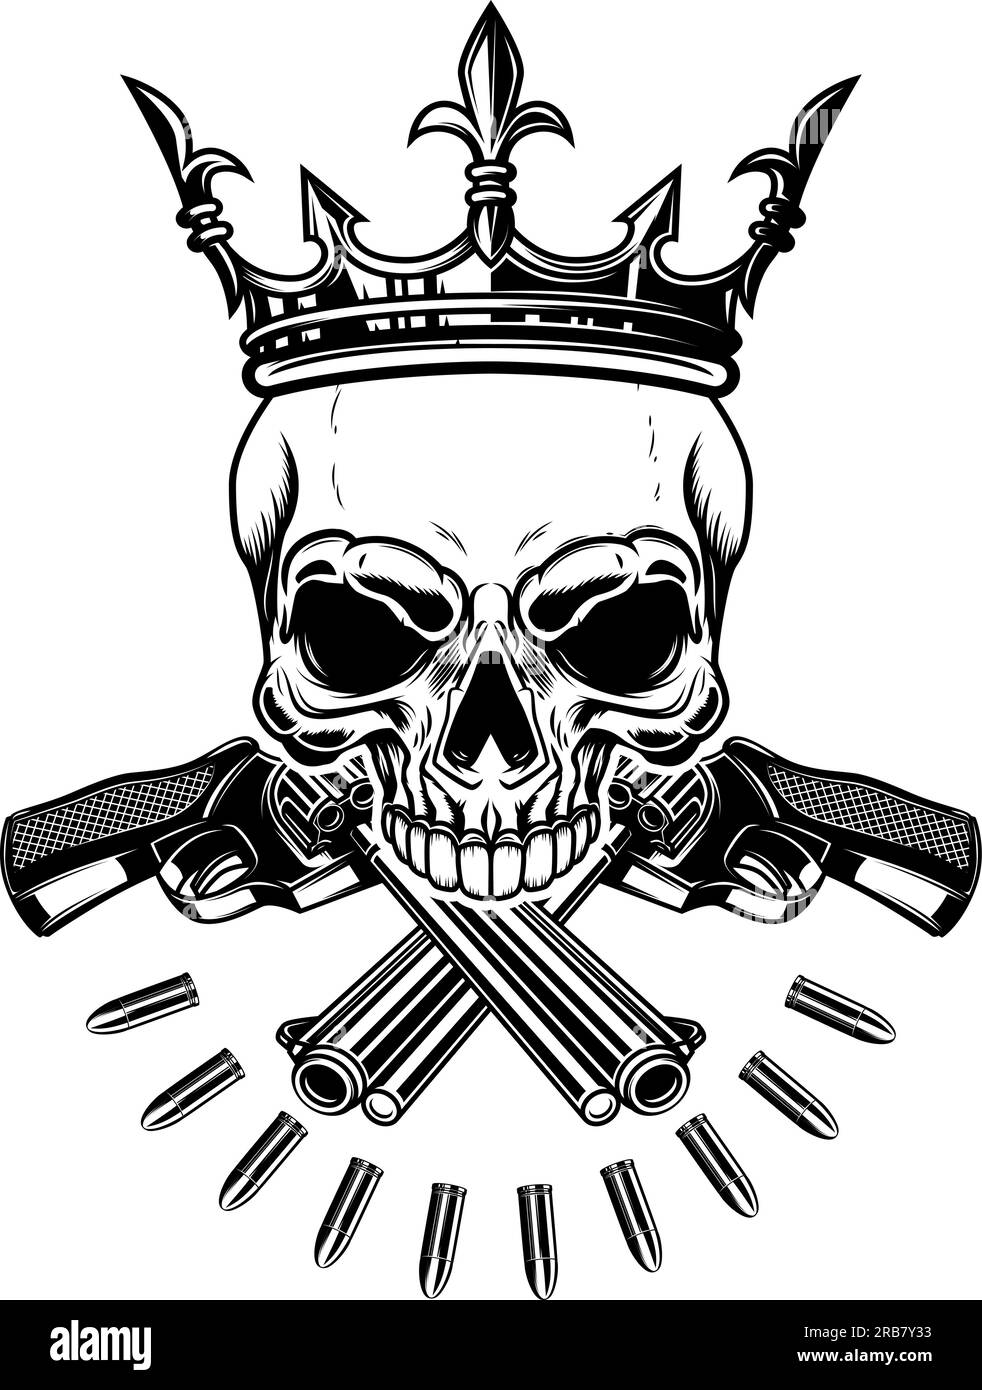 Abbildung des Schädels mit gekreuzten Revolvern und Königskrone. Designelement für Logo, Label, Schild, Emblem. Vektordarstellung, Abbildung von Th Stock Vektor